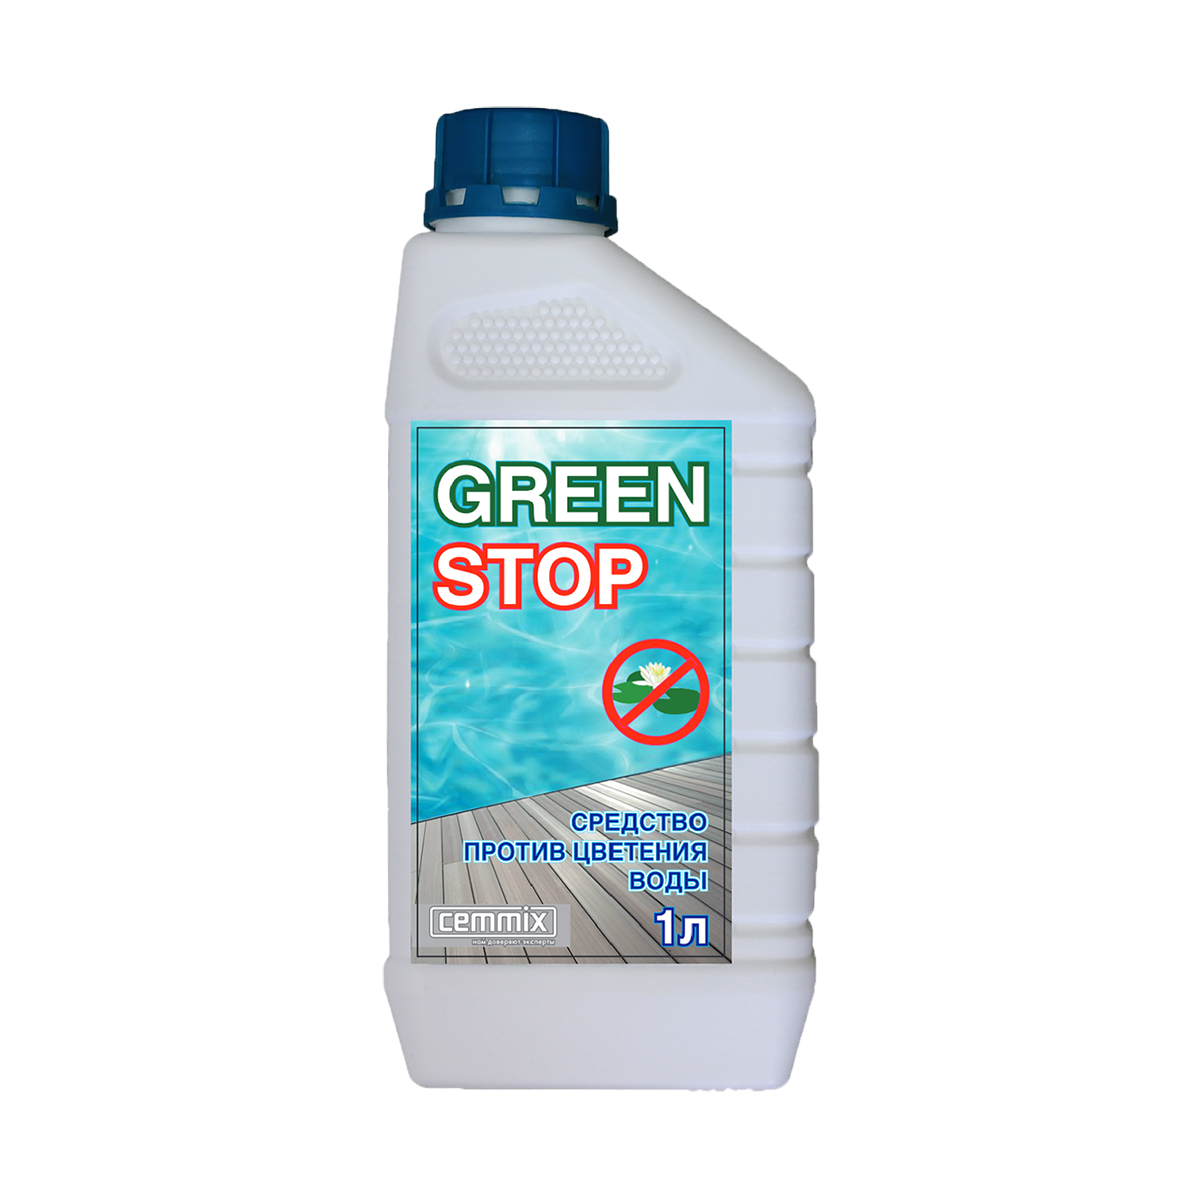 Средство против цветения воды Cemmix Green Stop, 1 л